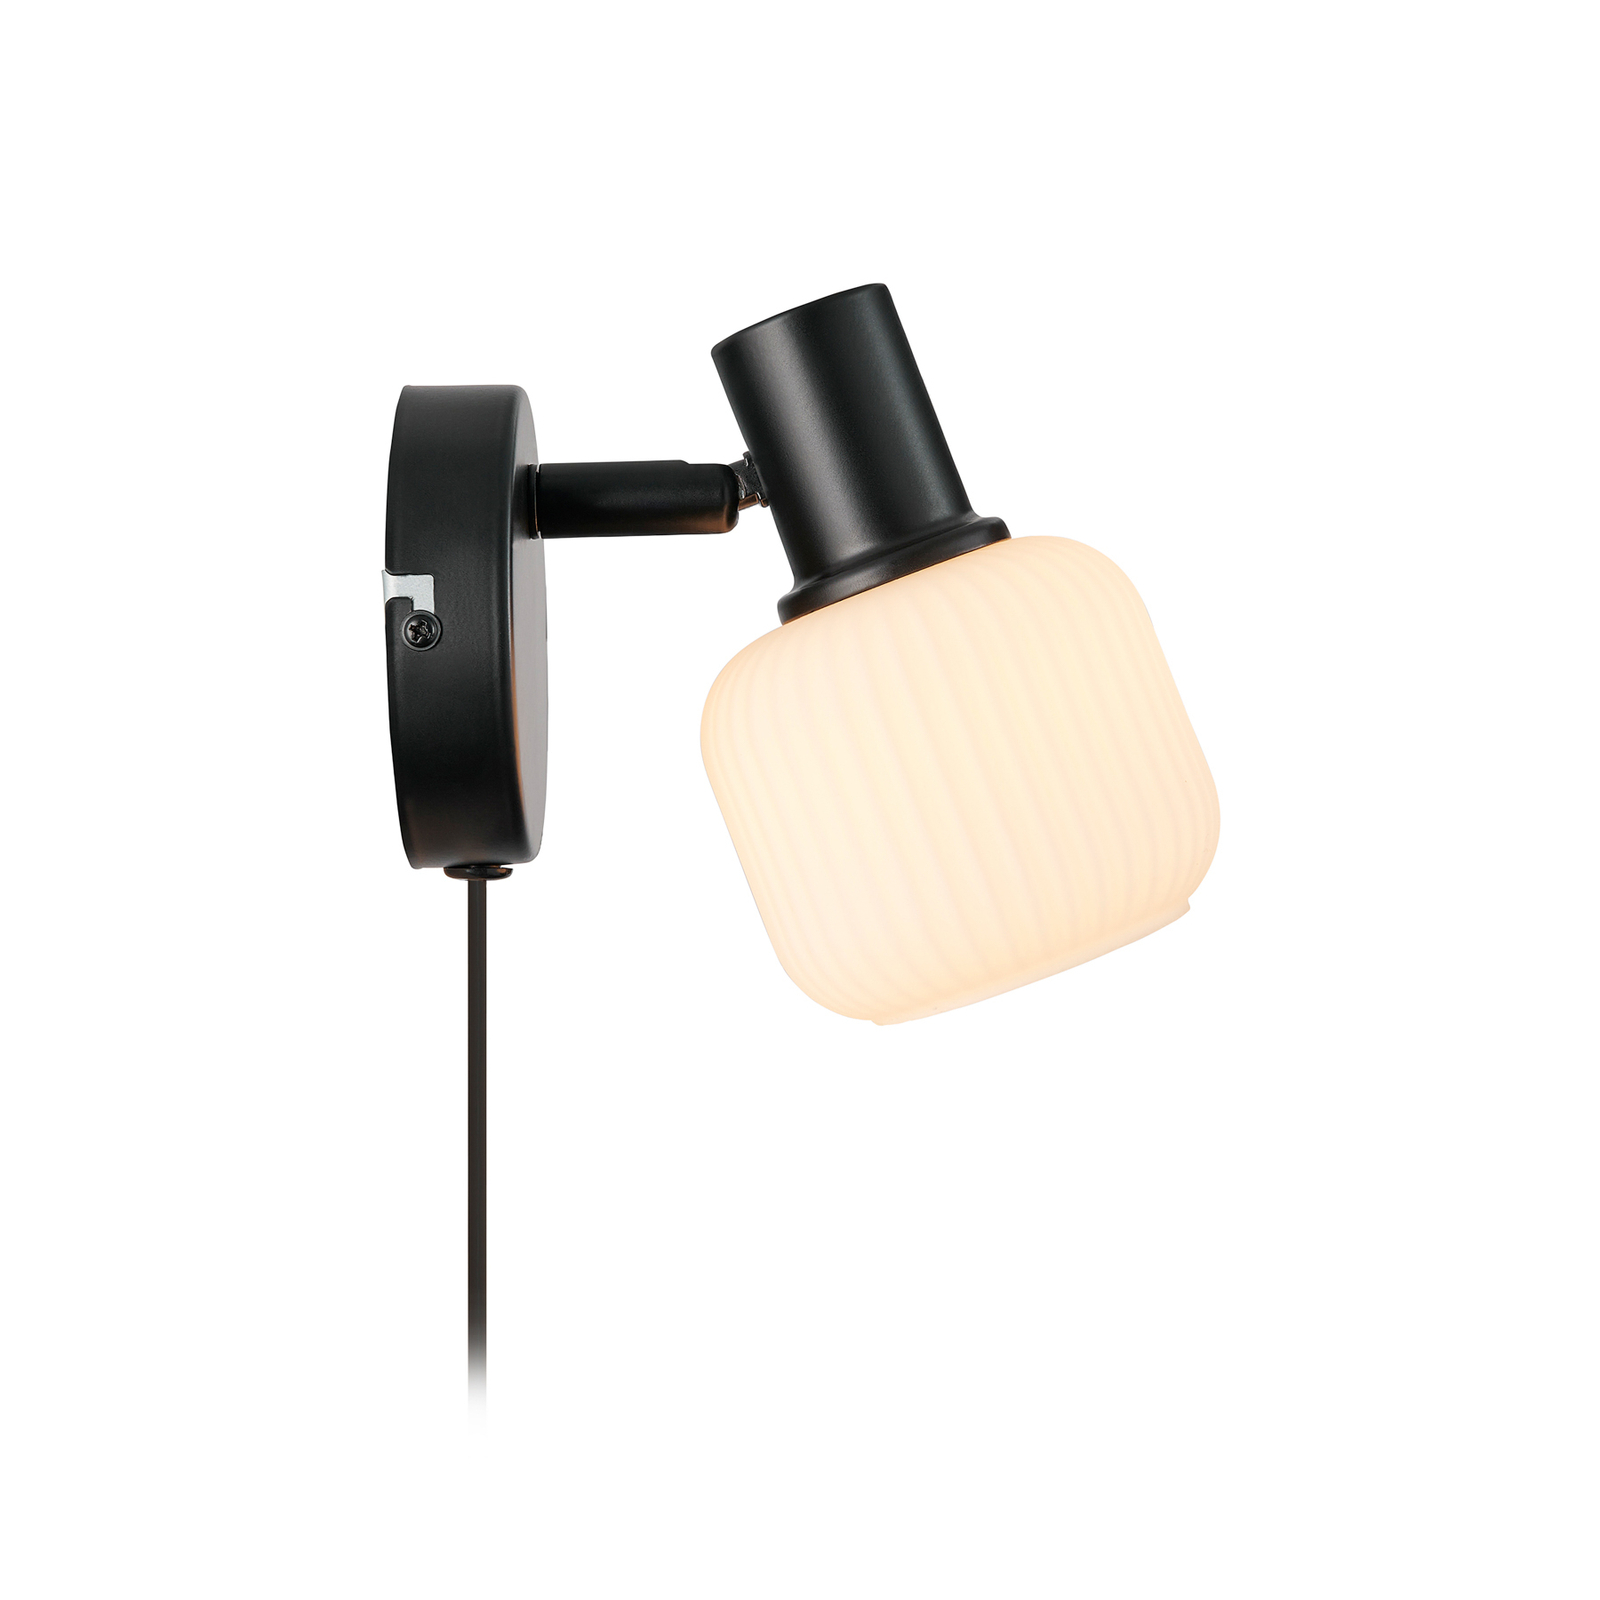 Milford Mini sienas lampa, melna, ar rievotu stiklu, ar kontaktdakšu